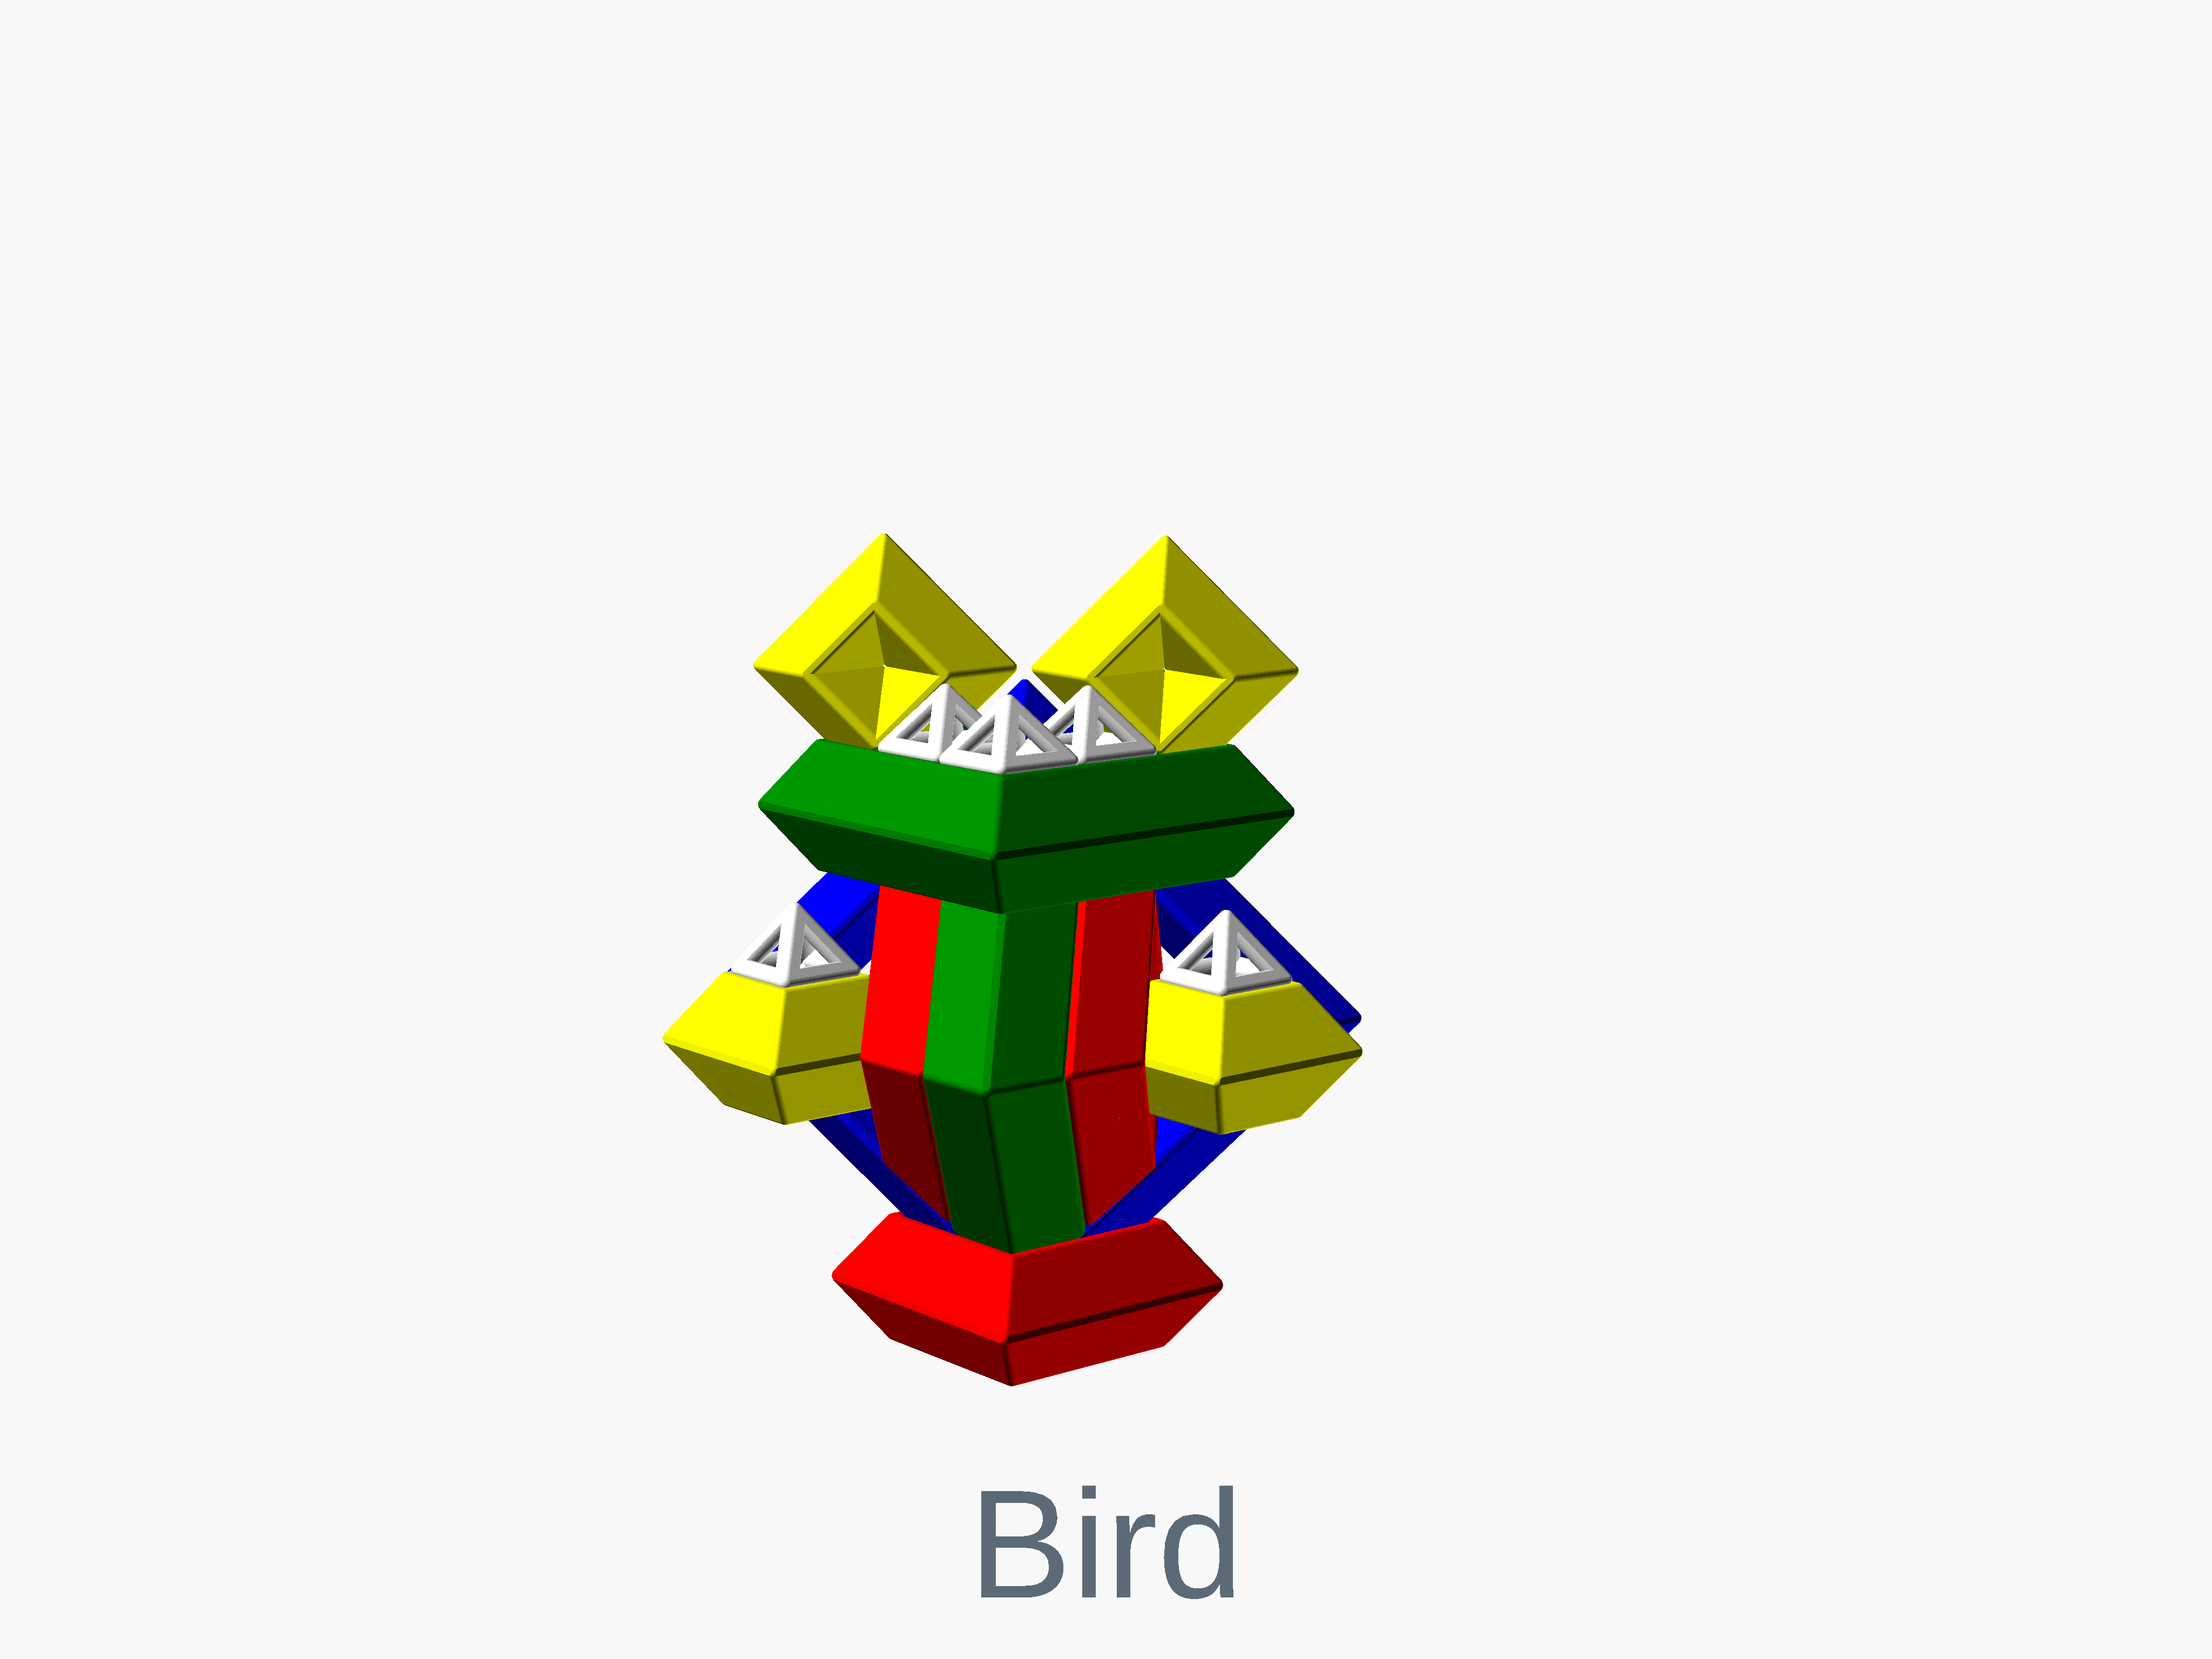 Octahedron bird